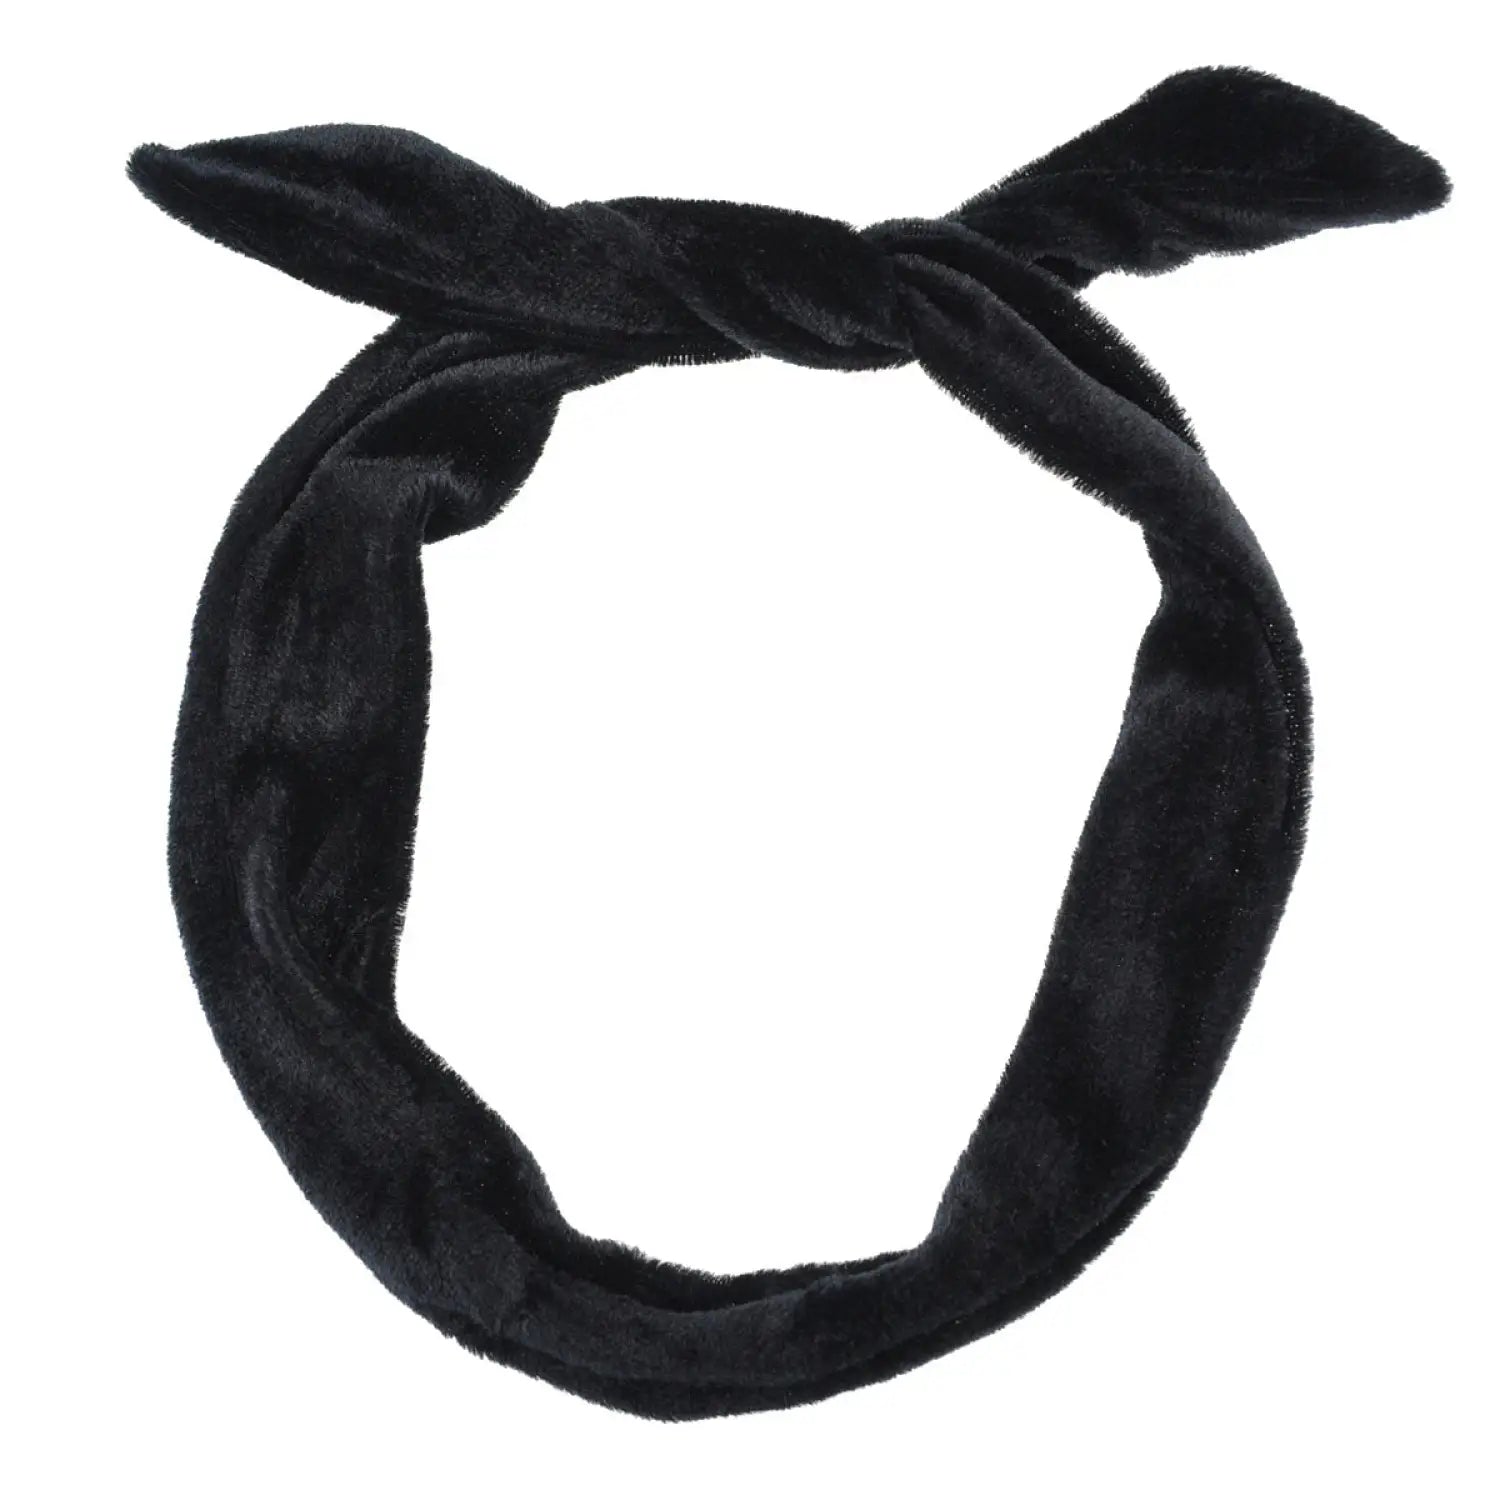 Black velvet wired bunny ears headband.